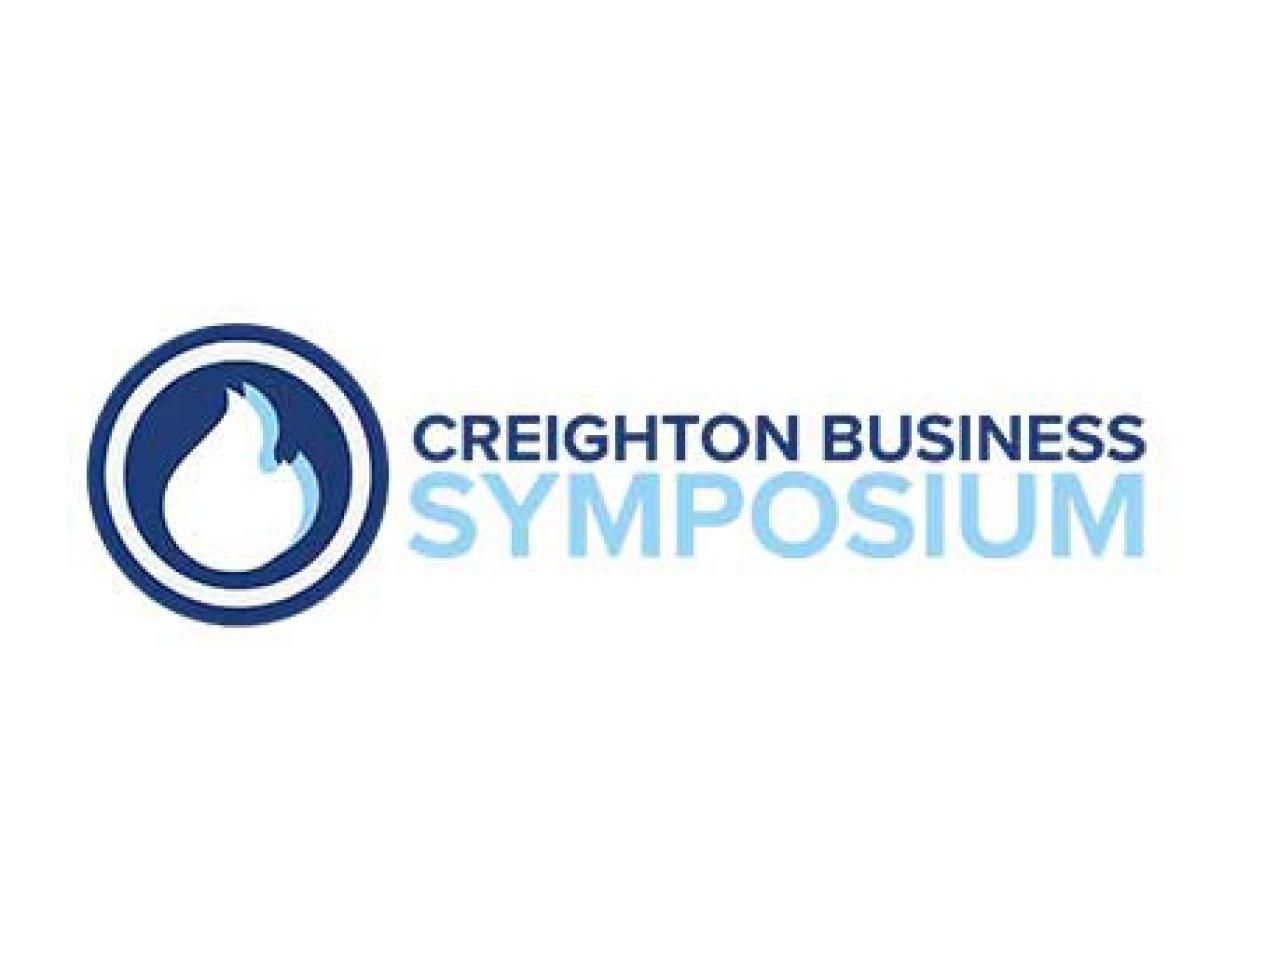 Business Symposium